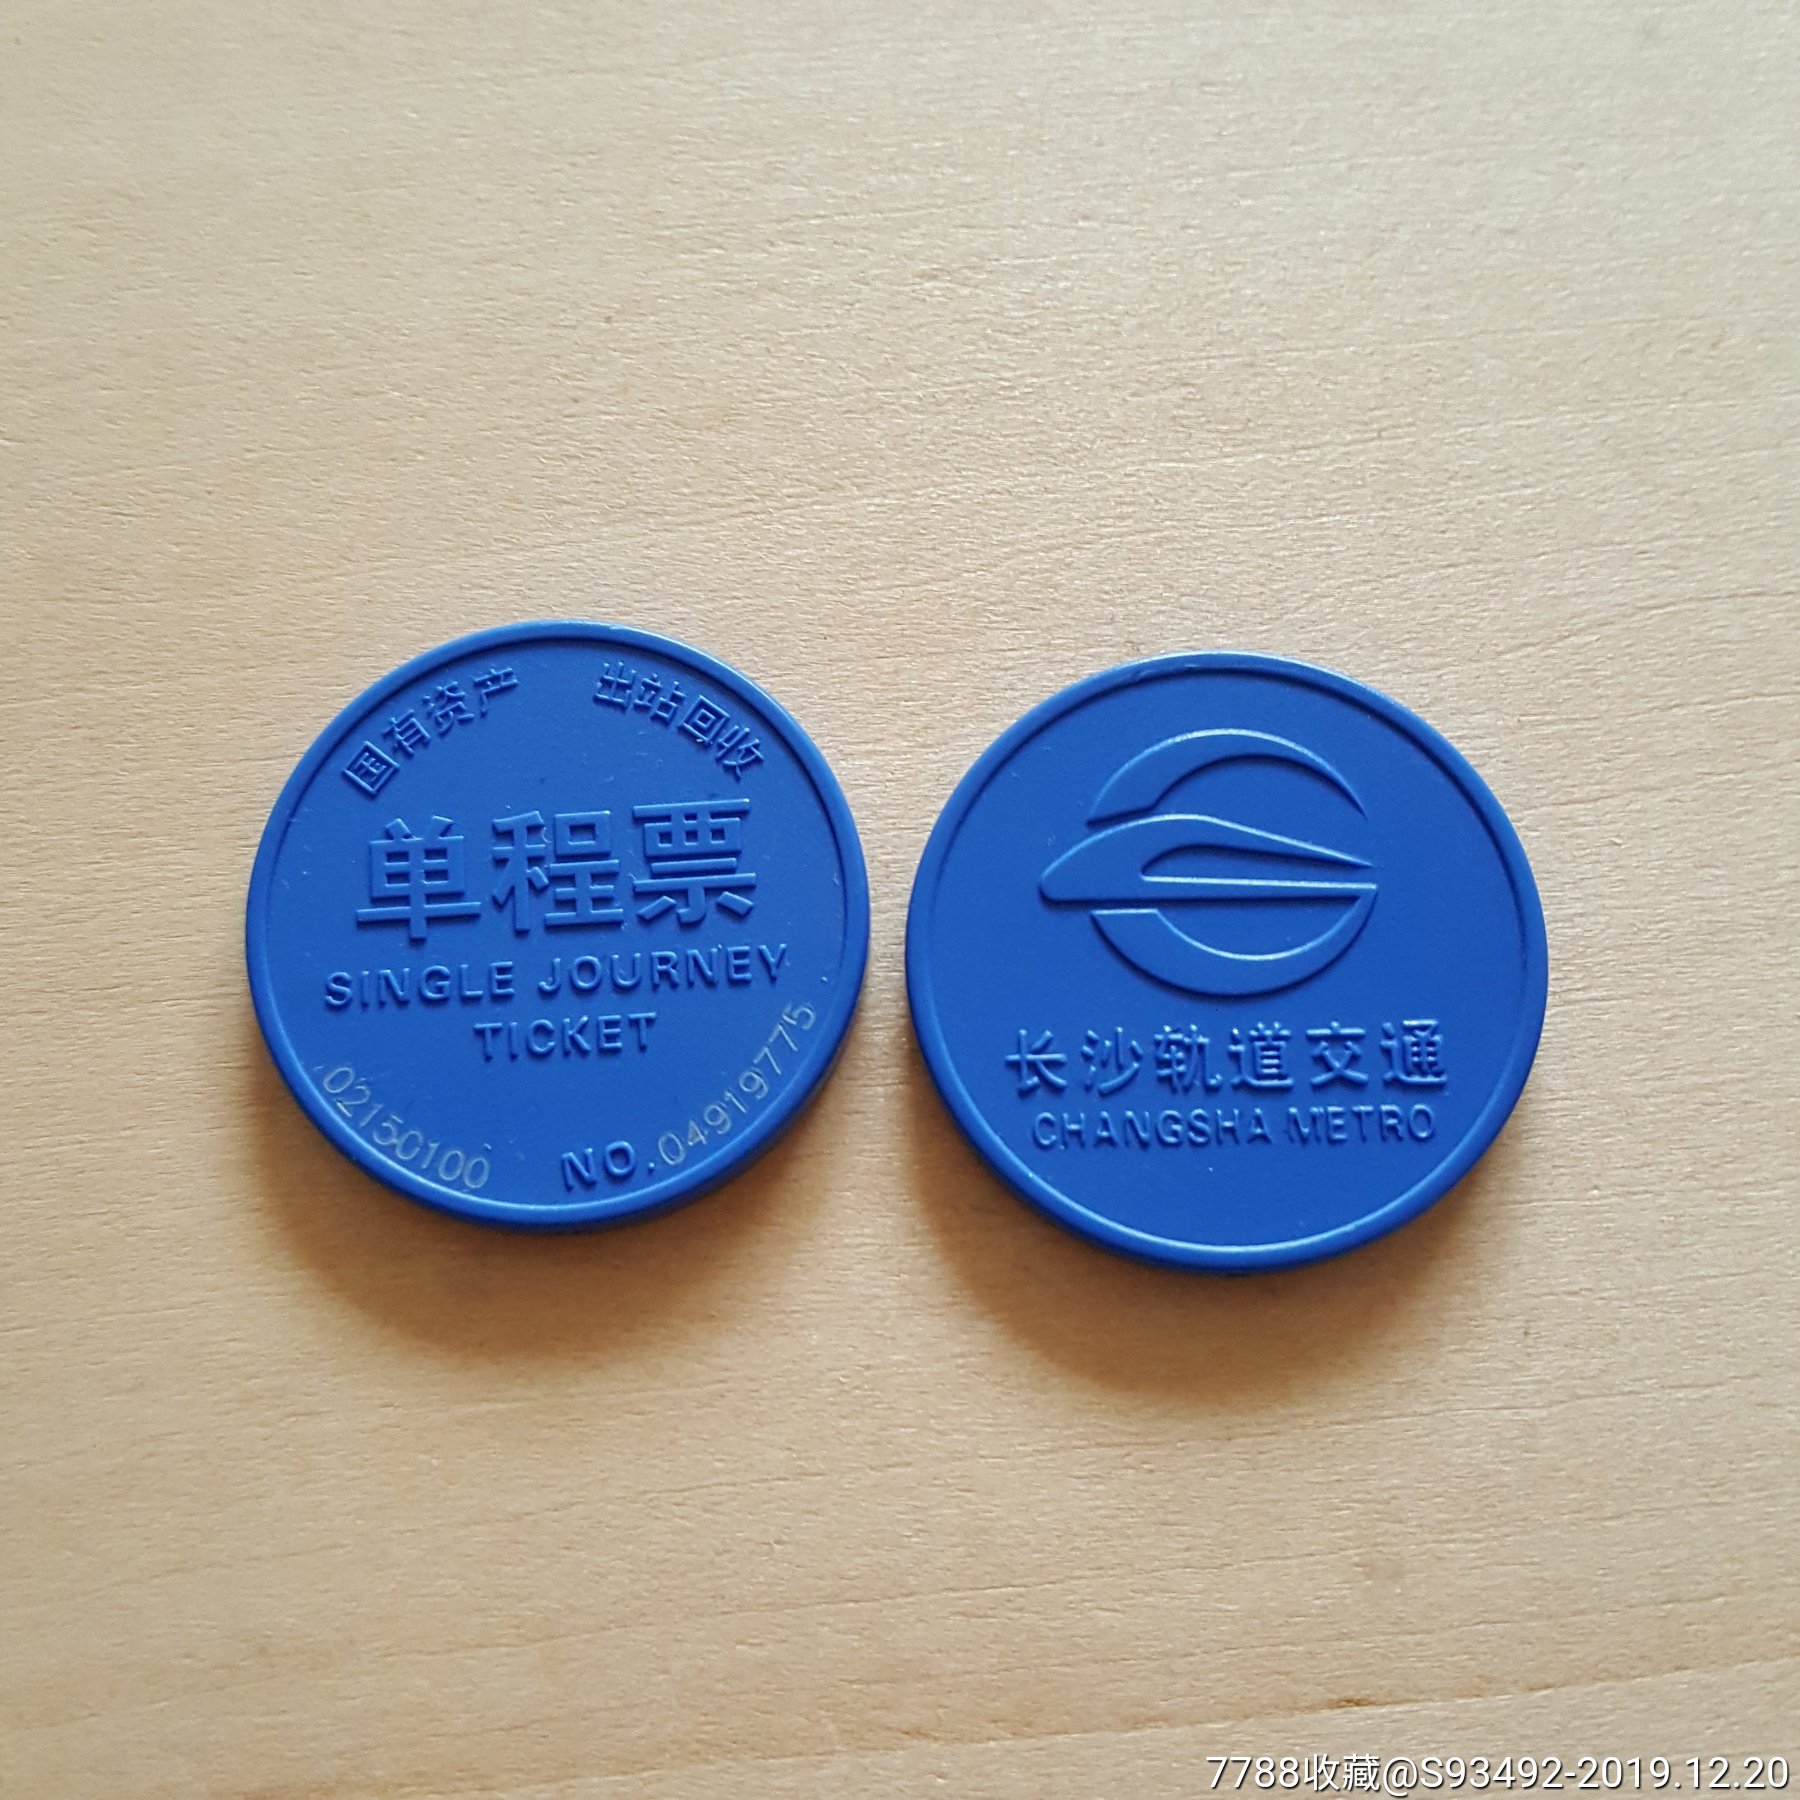 长沙地铁单程票/地铁币